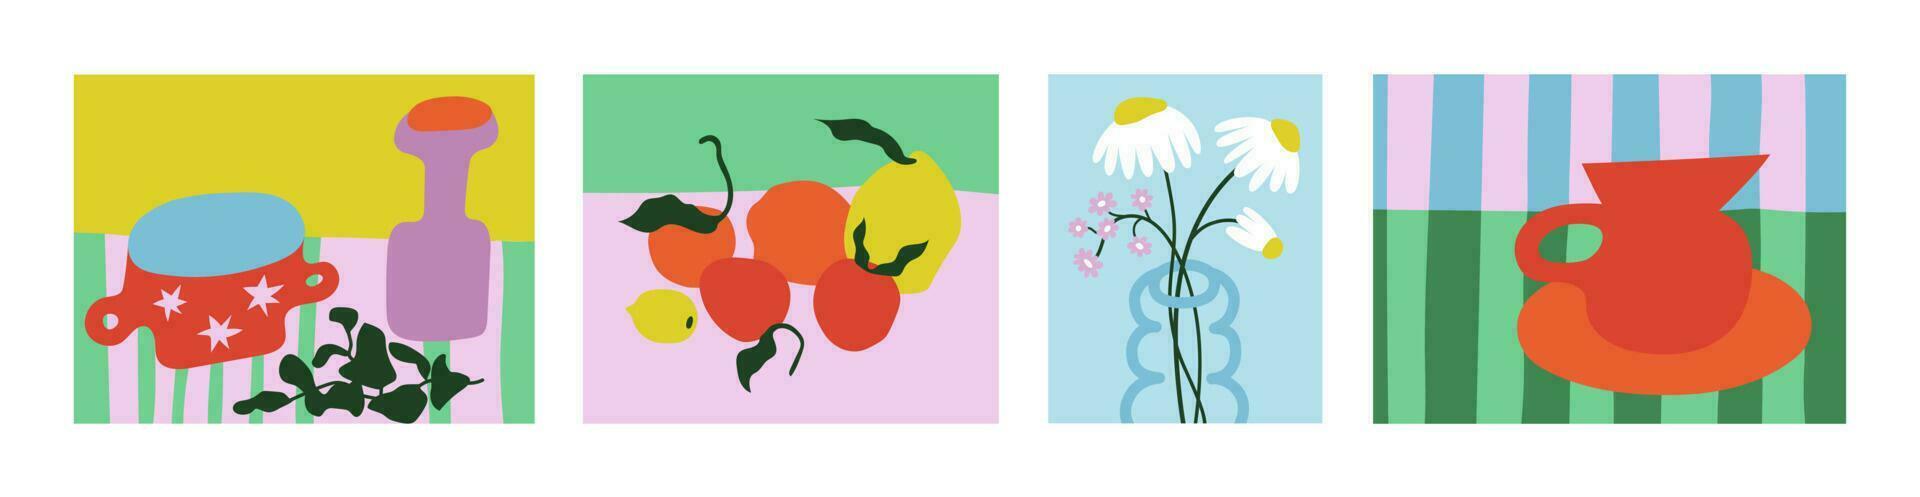 mazzi di fiori di fiori, ancora vite con frutta e fiori nel vasi. disegno stile. colorato illustrazioni di fiori, frutta e ancora vite. moderno interno la pittura. mano disegnato vettore illustrazione.